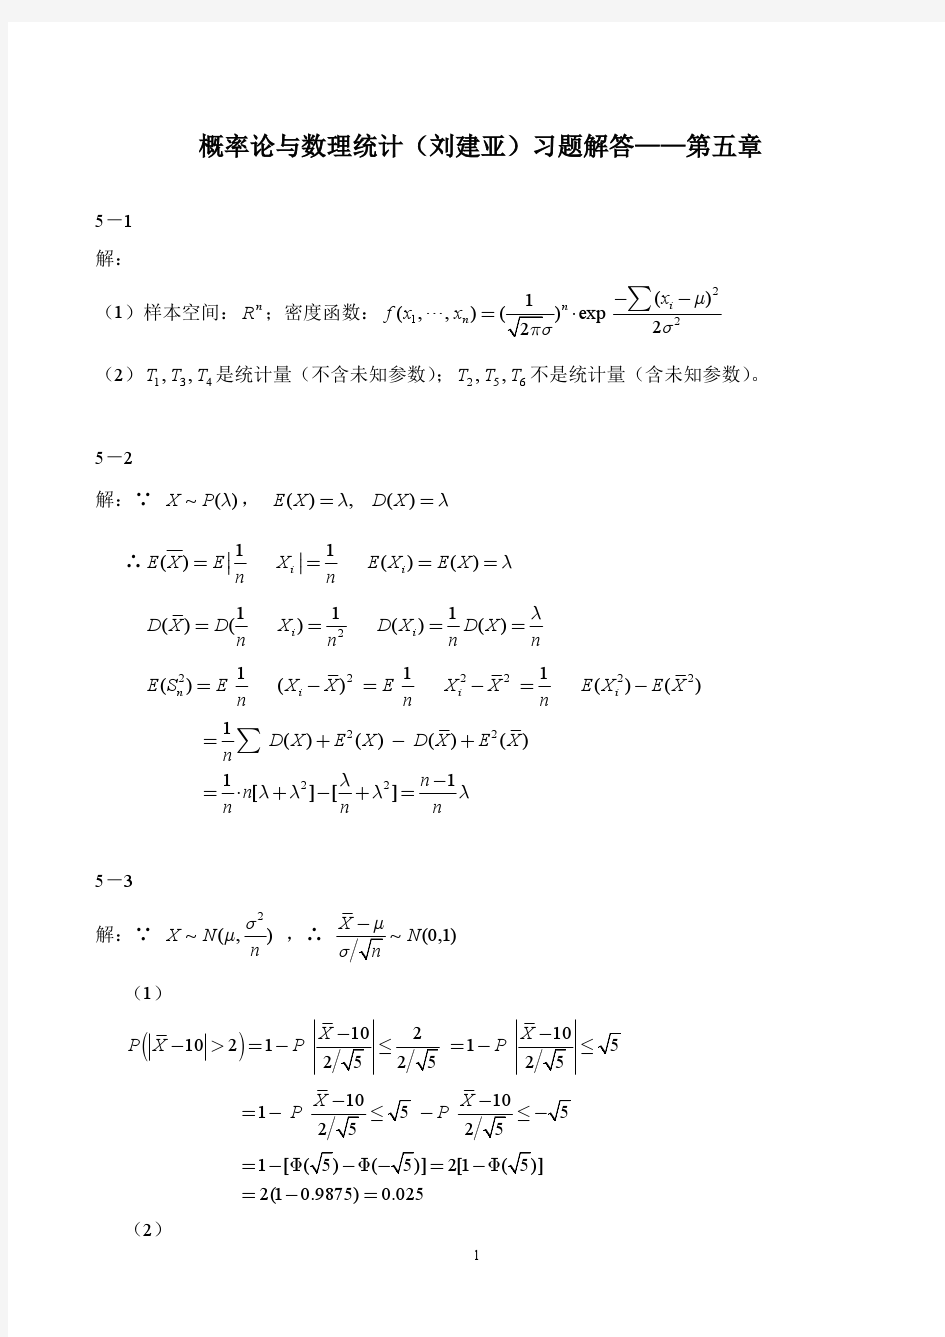 概率论与数理统计(刘建亚)习题解答第5章